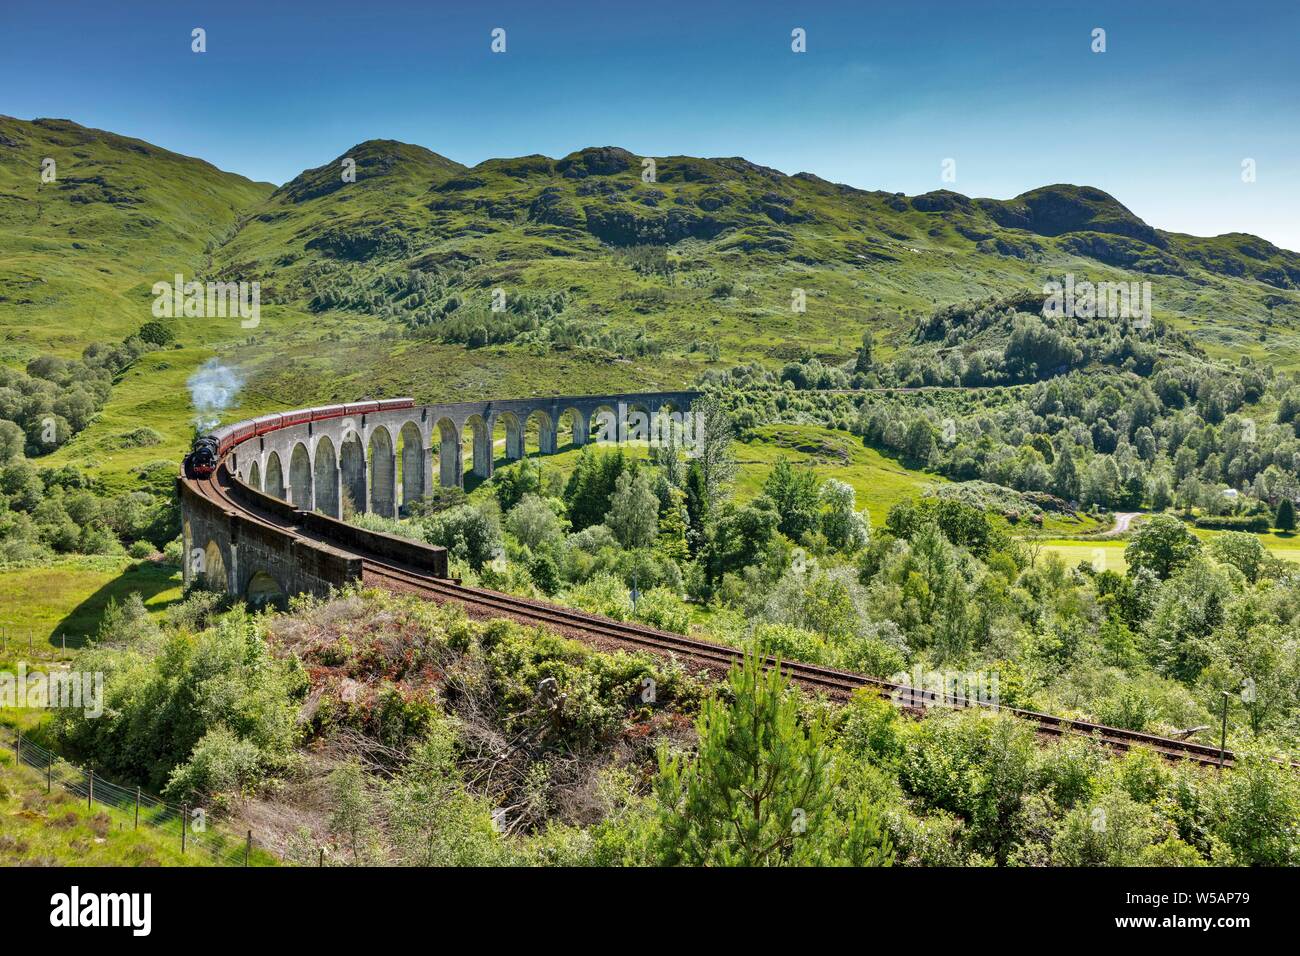 Viaduc de Glenfinnan des films de Harry Potter avec train historique jacobine, Express, Glenfinnan, Ecosse, Grande-Bretagne Banque D'Images